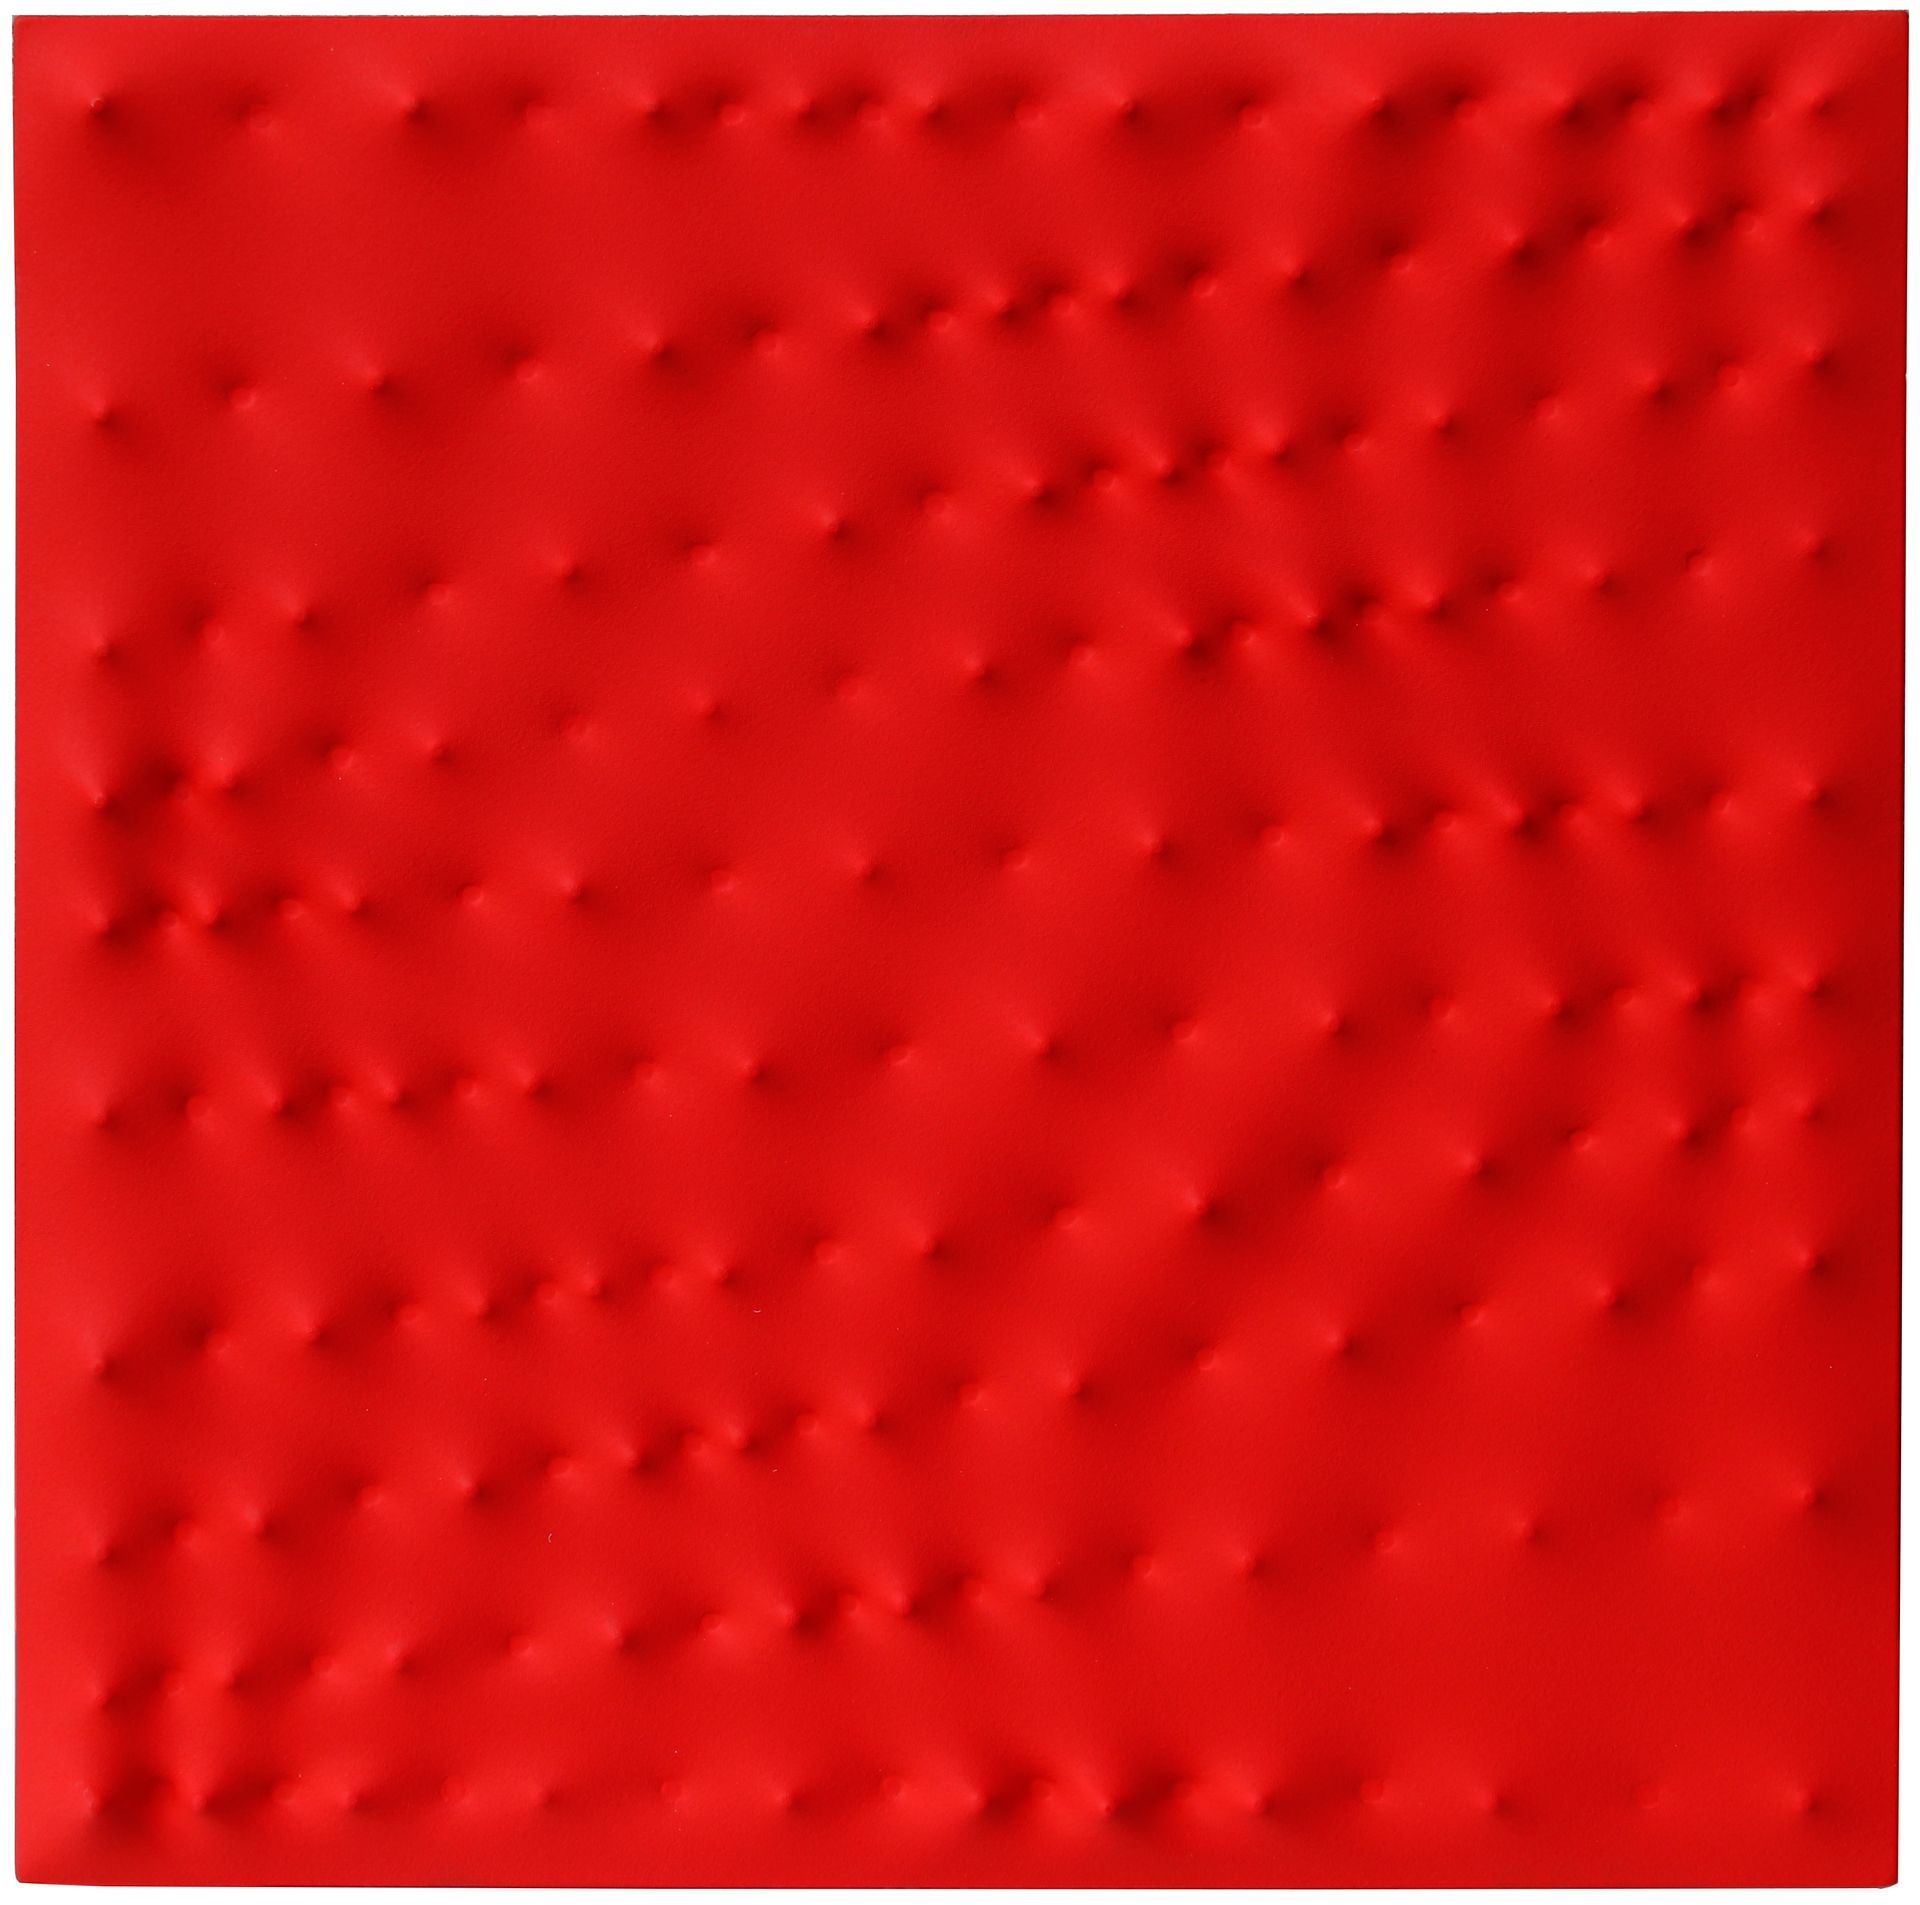 Enrico CASTELLANI Superficie rossa 1993, huile sur toile structurée, cm. 60x60

&hellip;